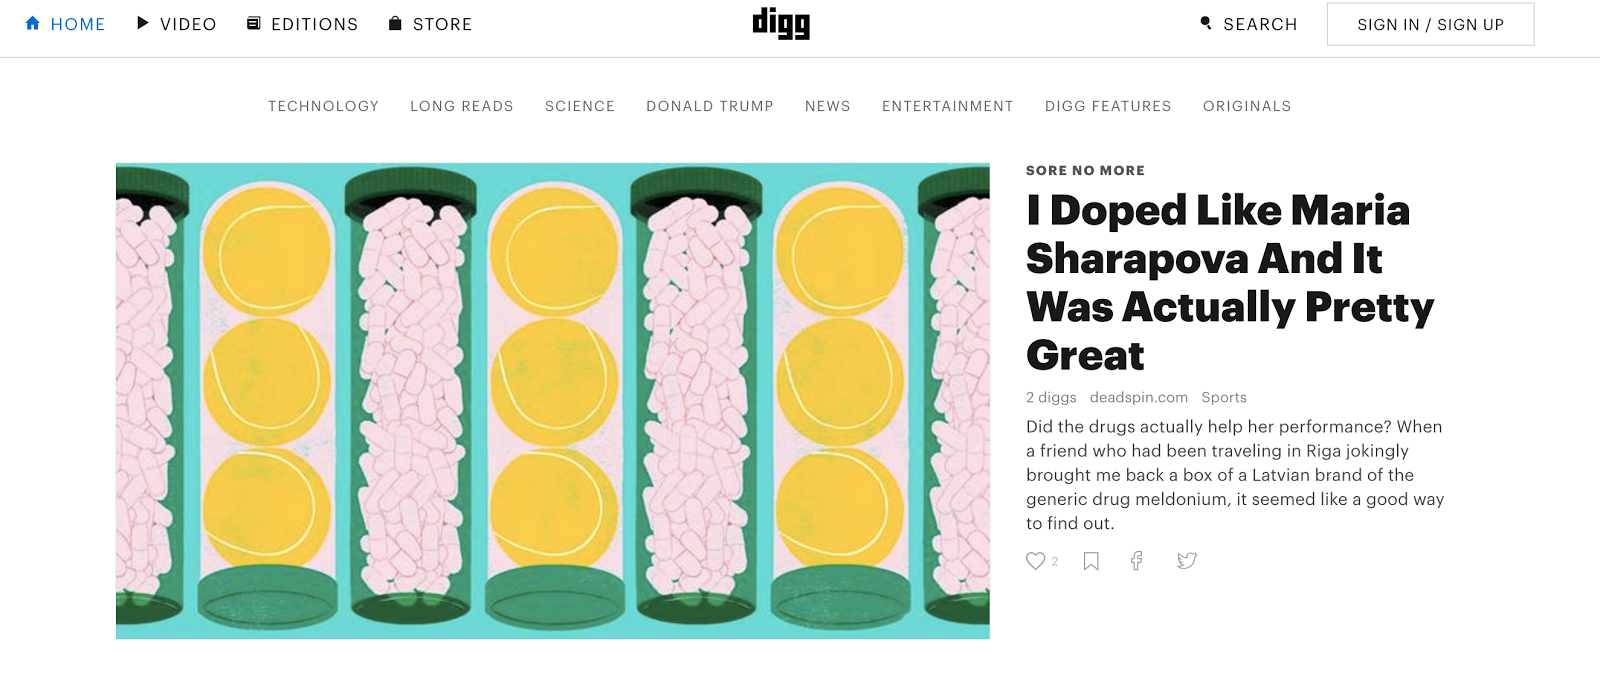 Еще один сайт социальных закладок,   Digg   помогает пользователям находить записи в блогах и другой контент, а также делиться и продвигать истории, которые им нравятся